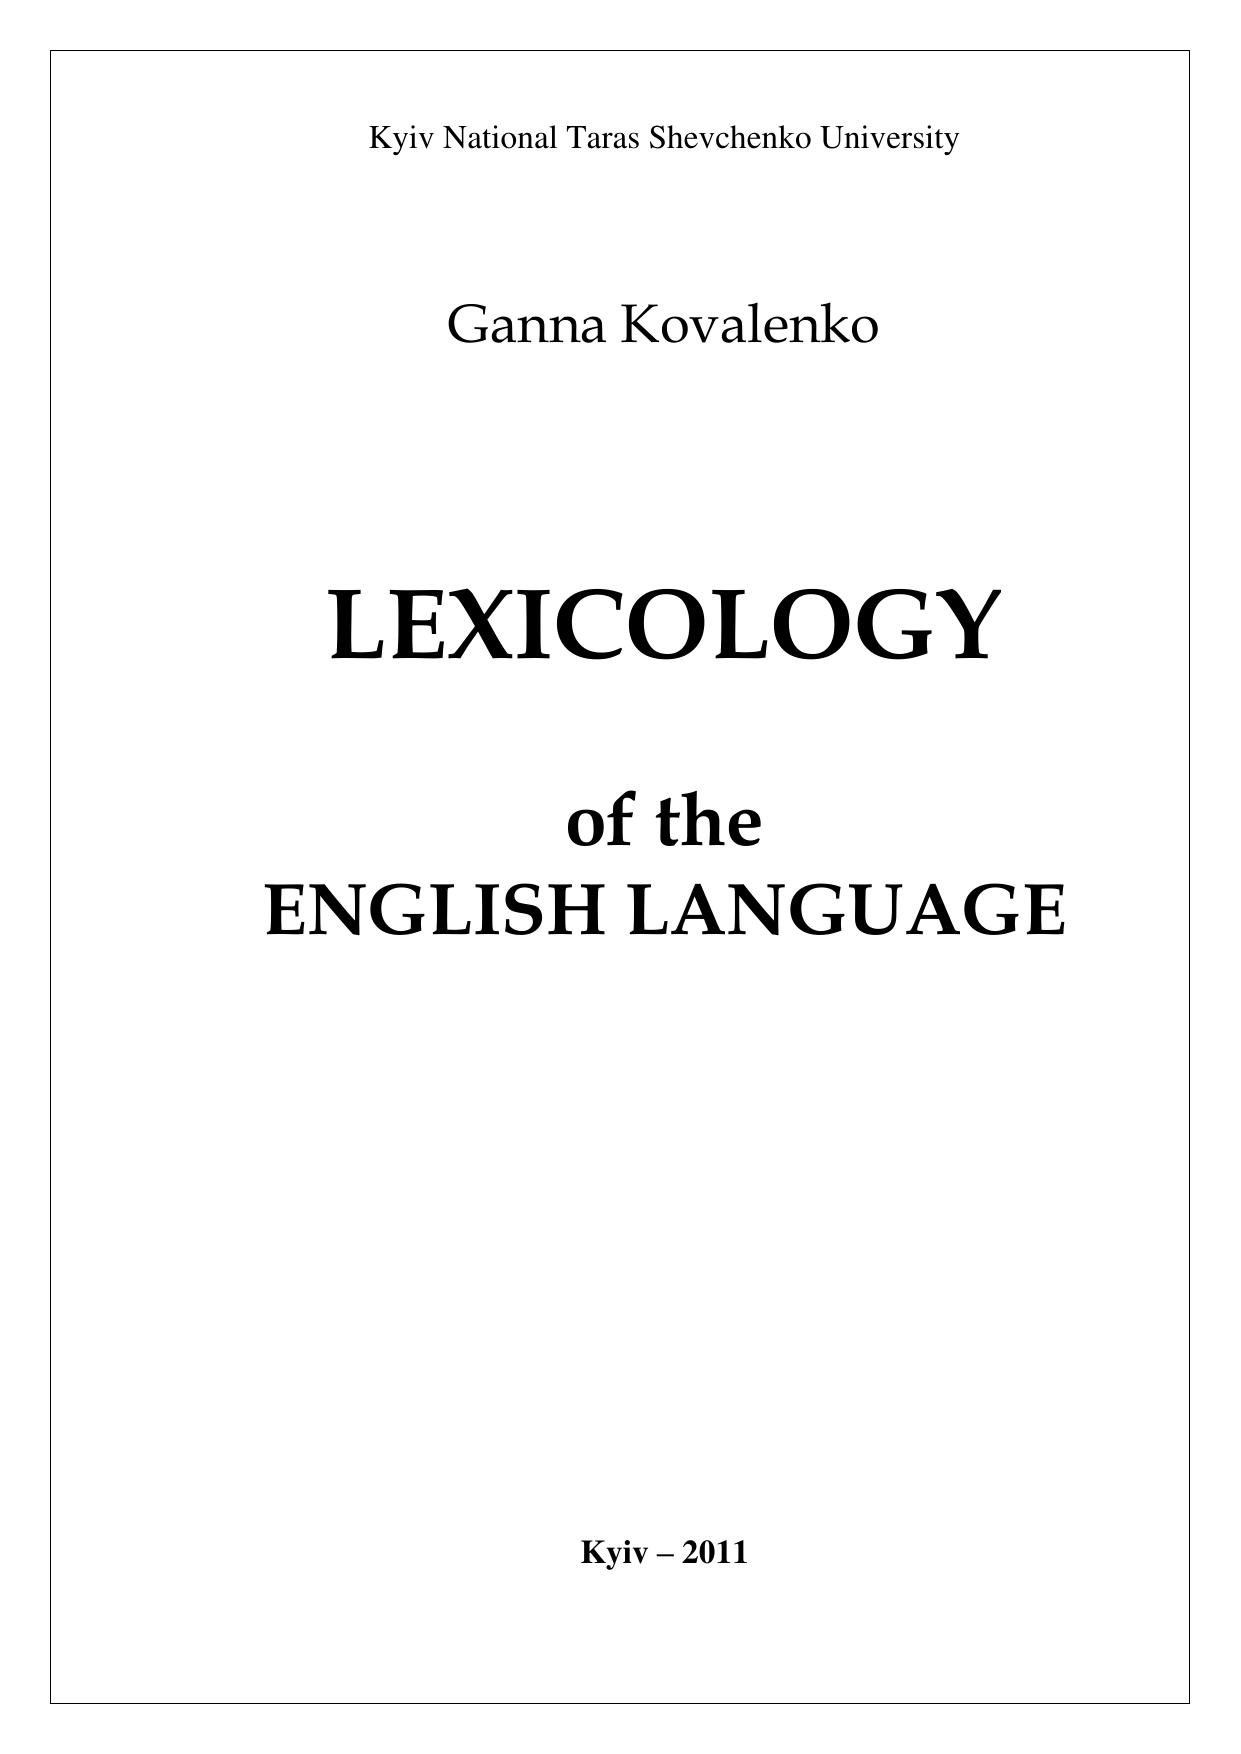 Lexicology of the English language